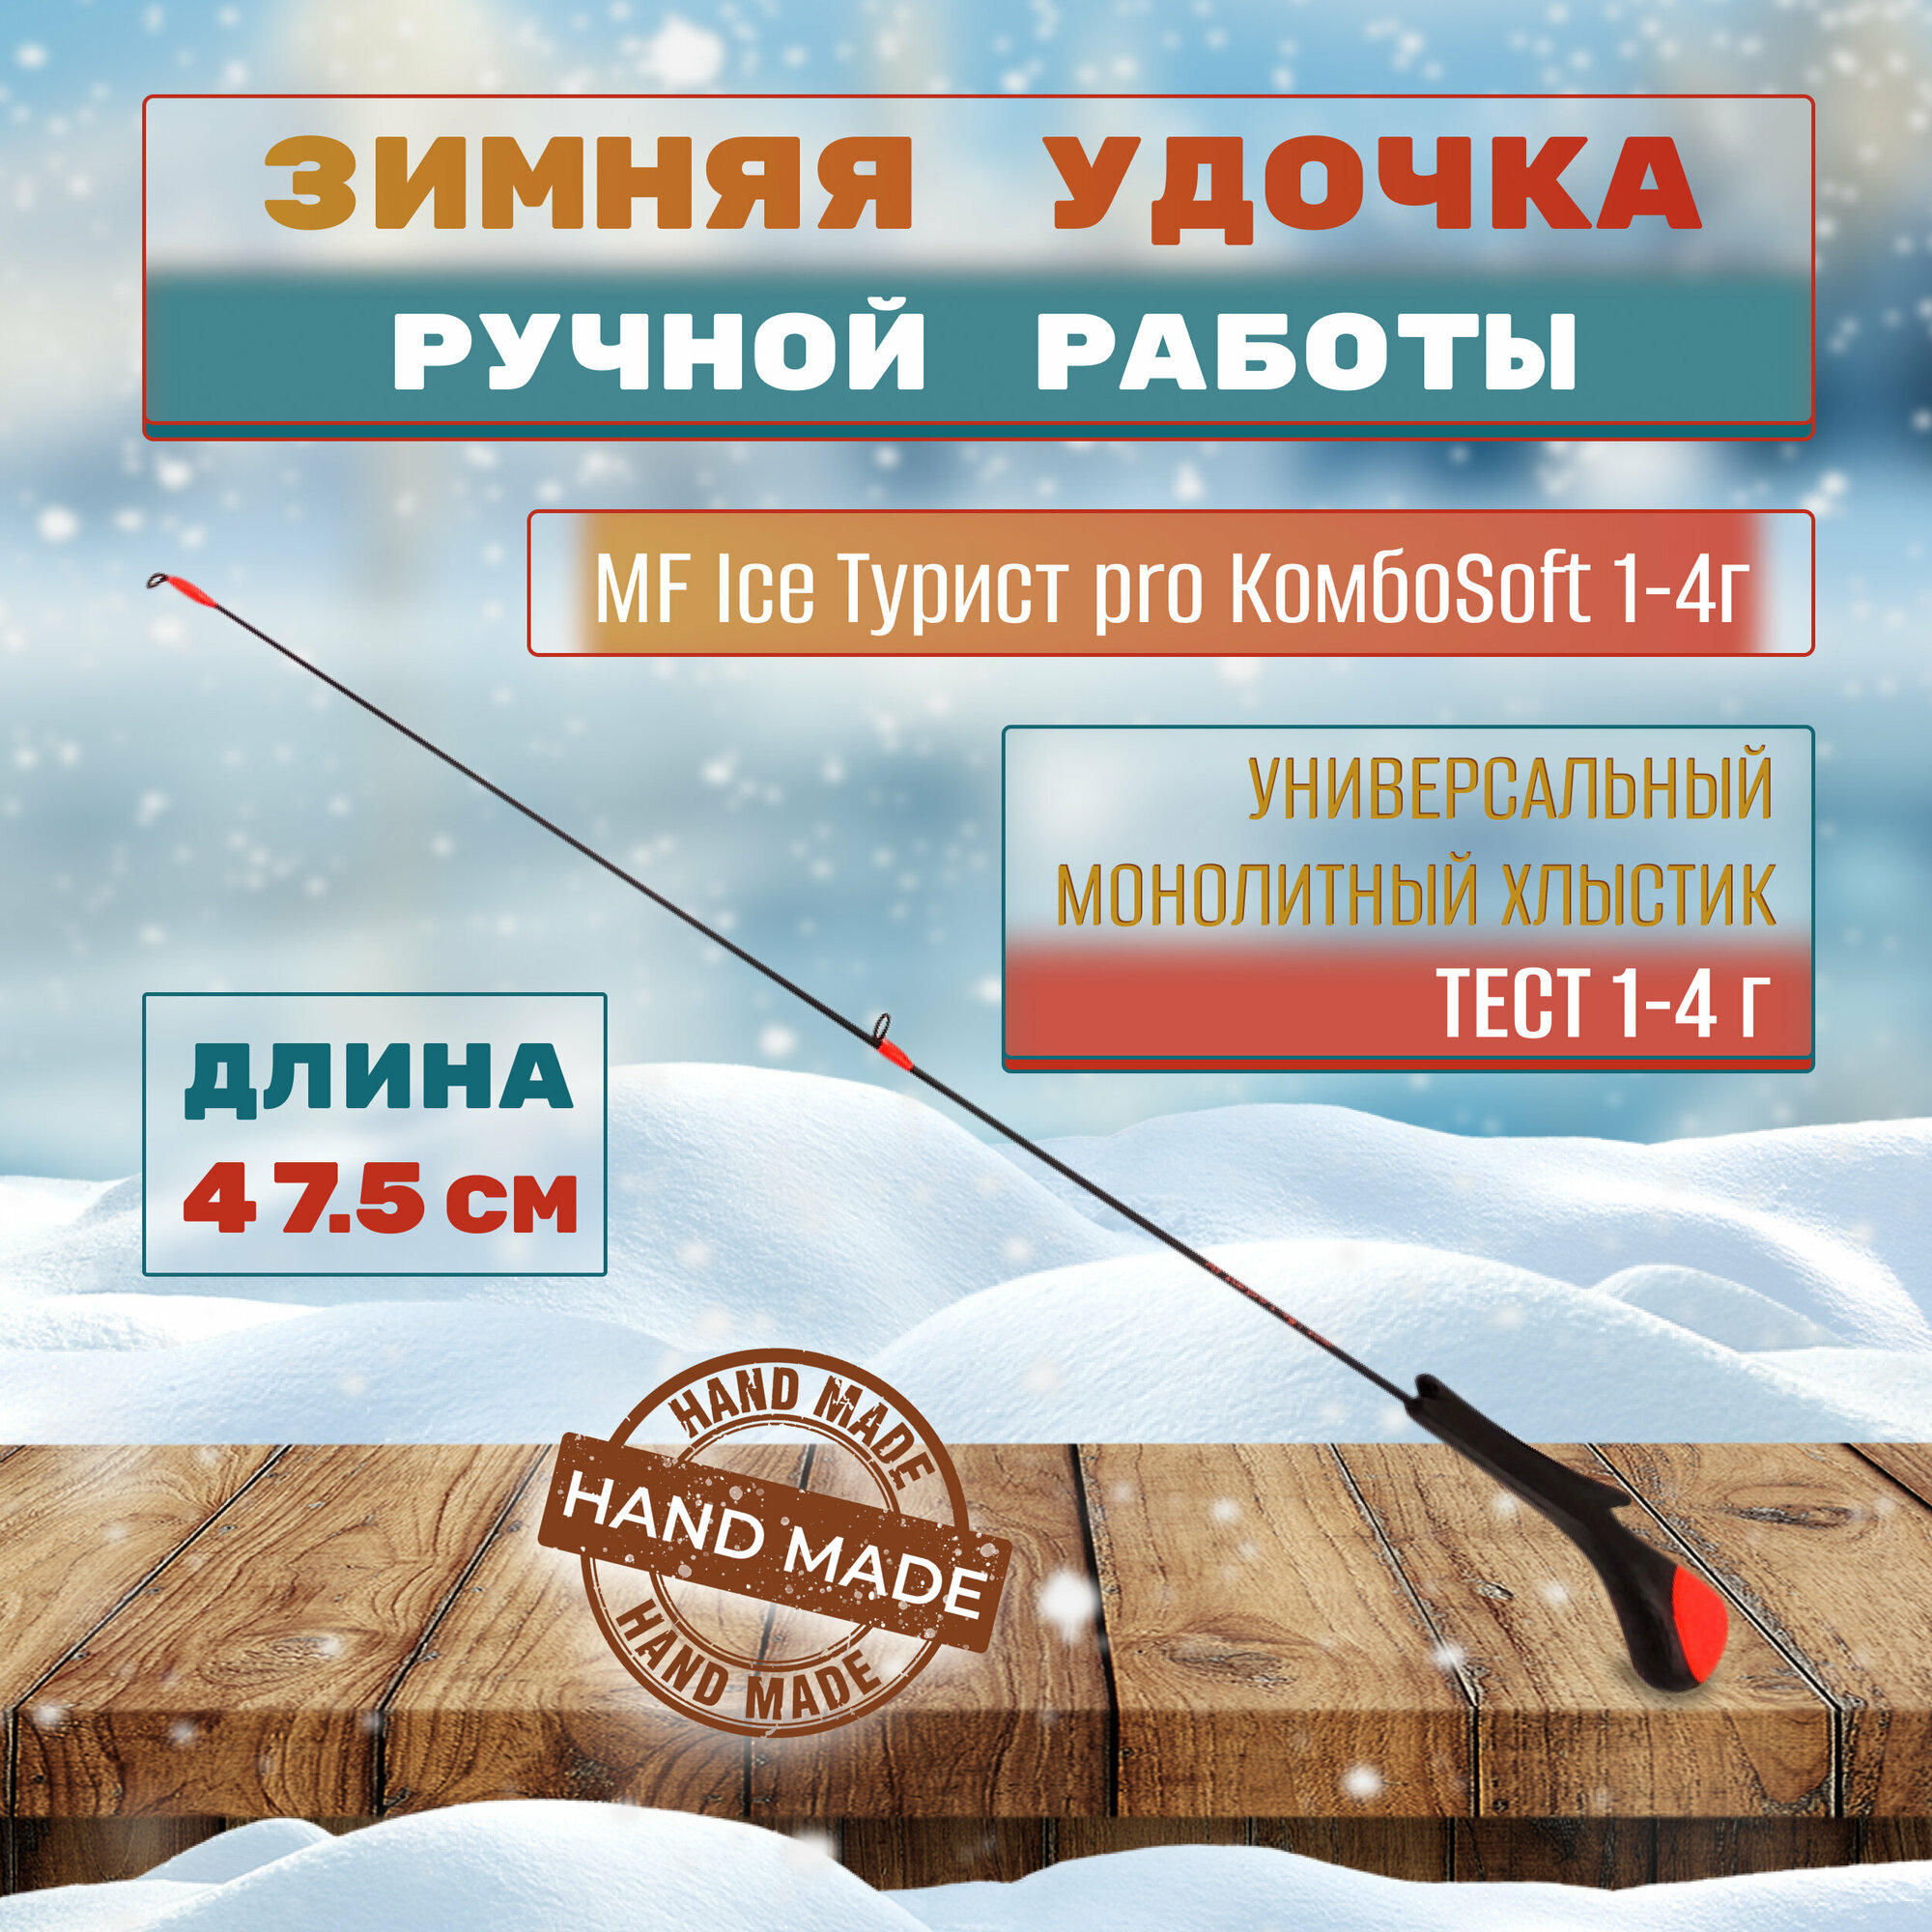 Удочка зимняя MF Ice Турист pro КомбоSoft 1-4г